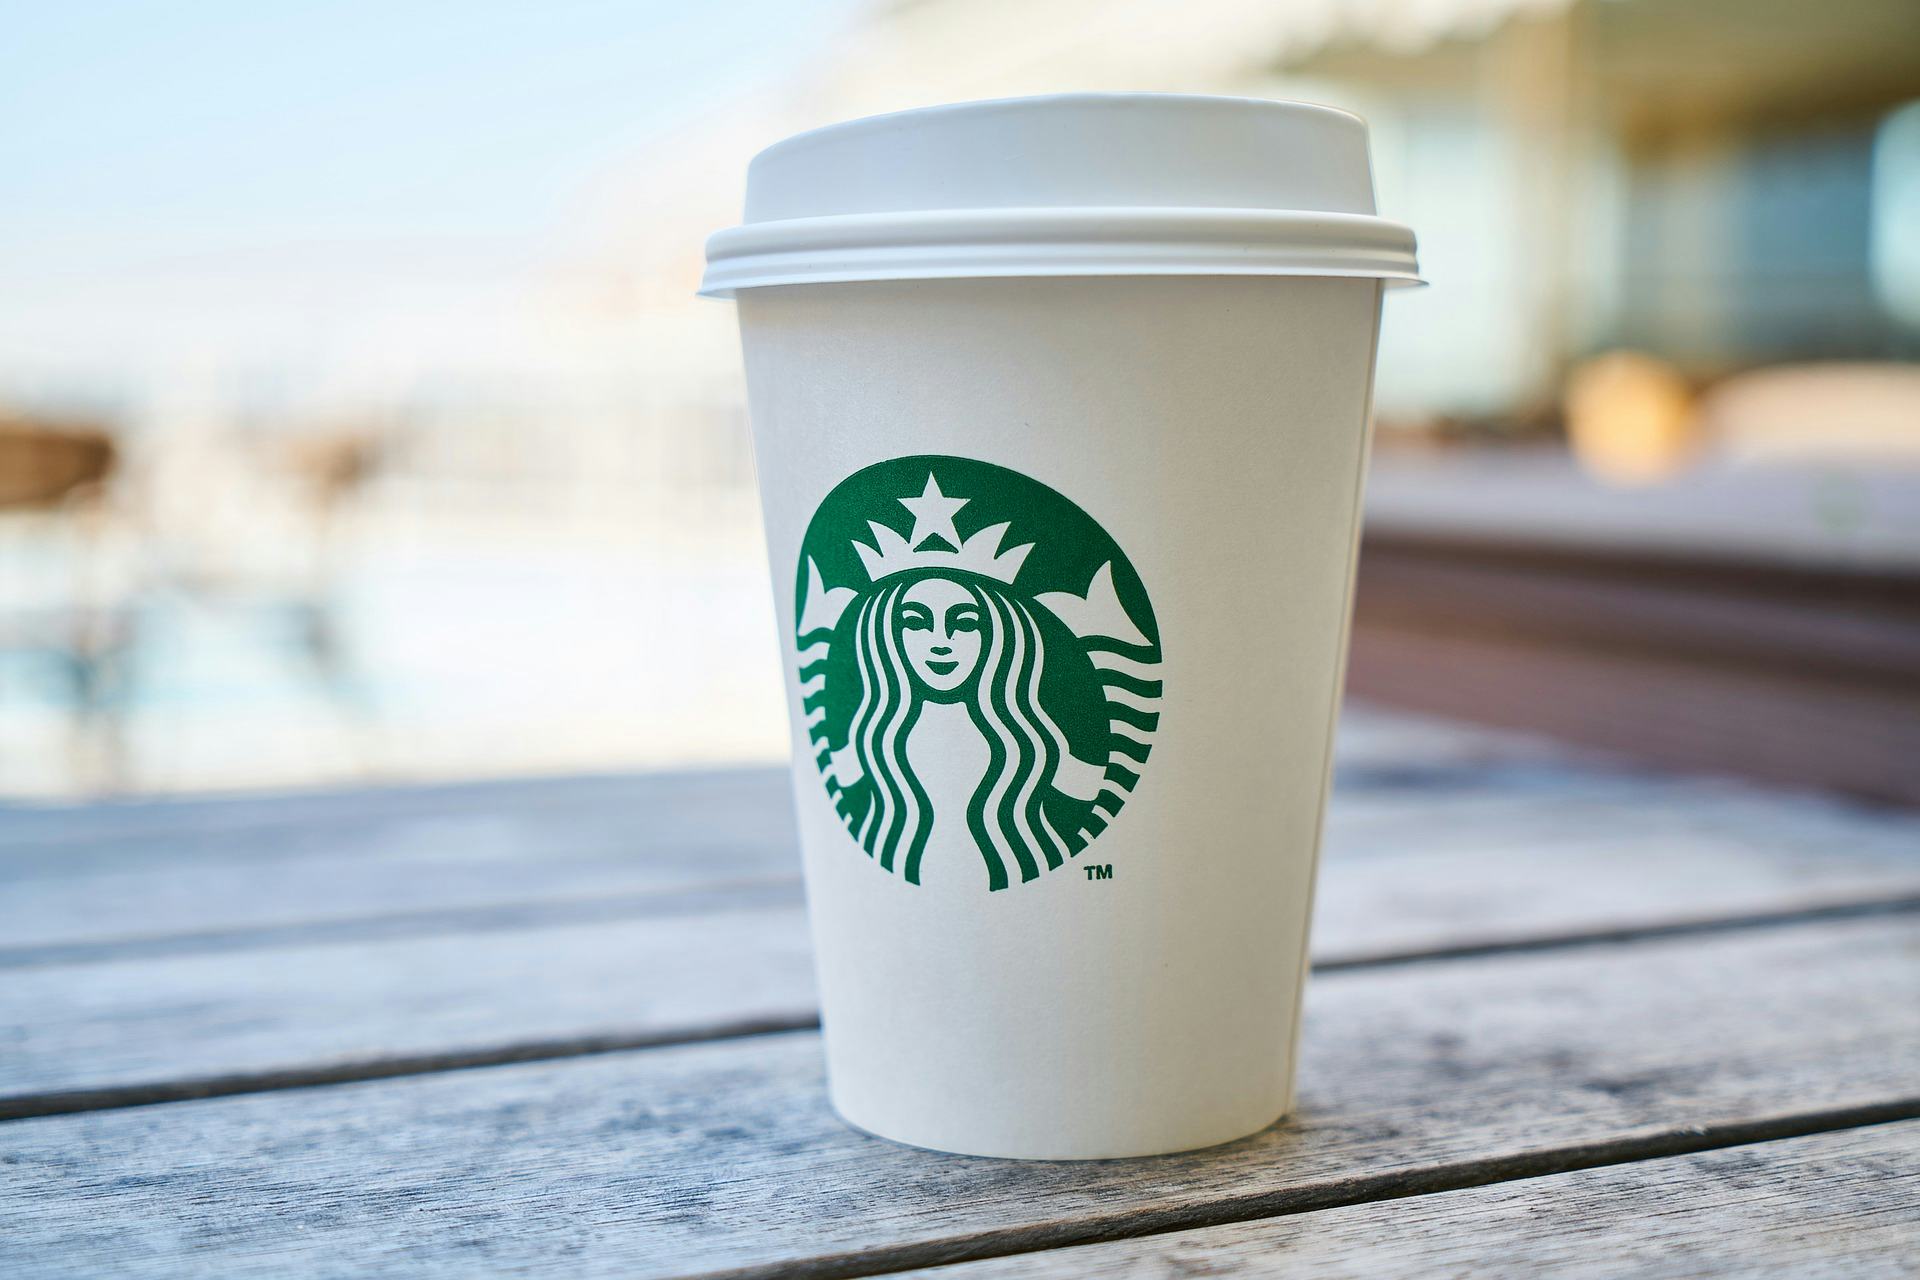 Starbucks wil meer koolstof opslaan dan uitstoten